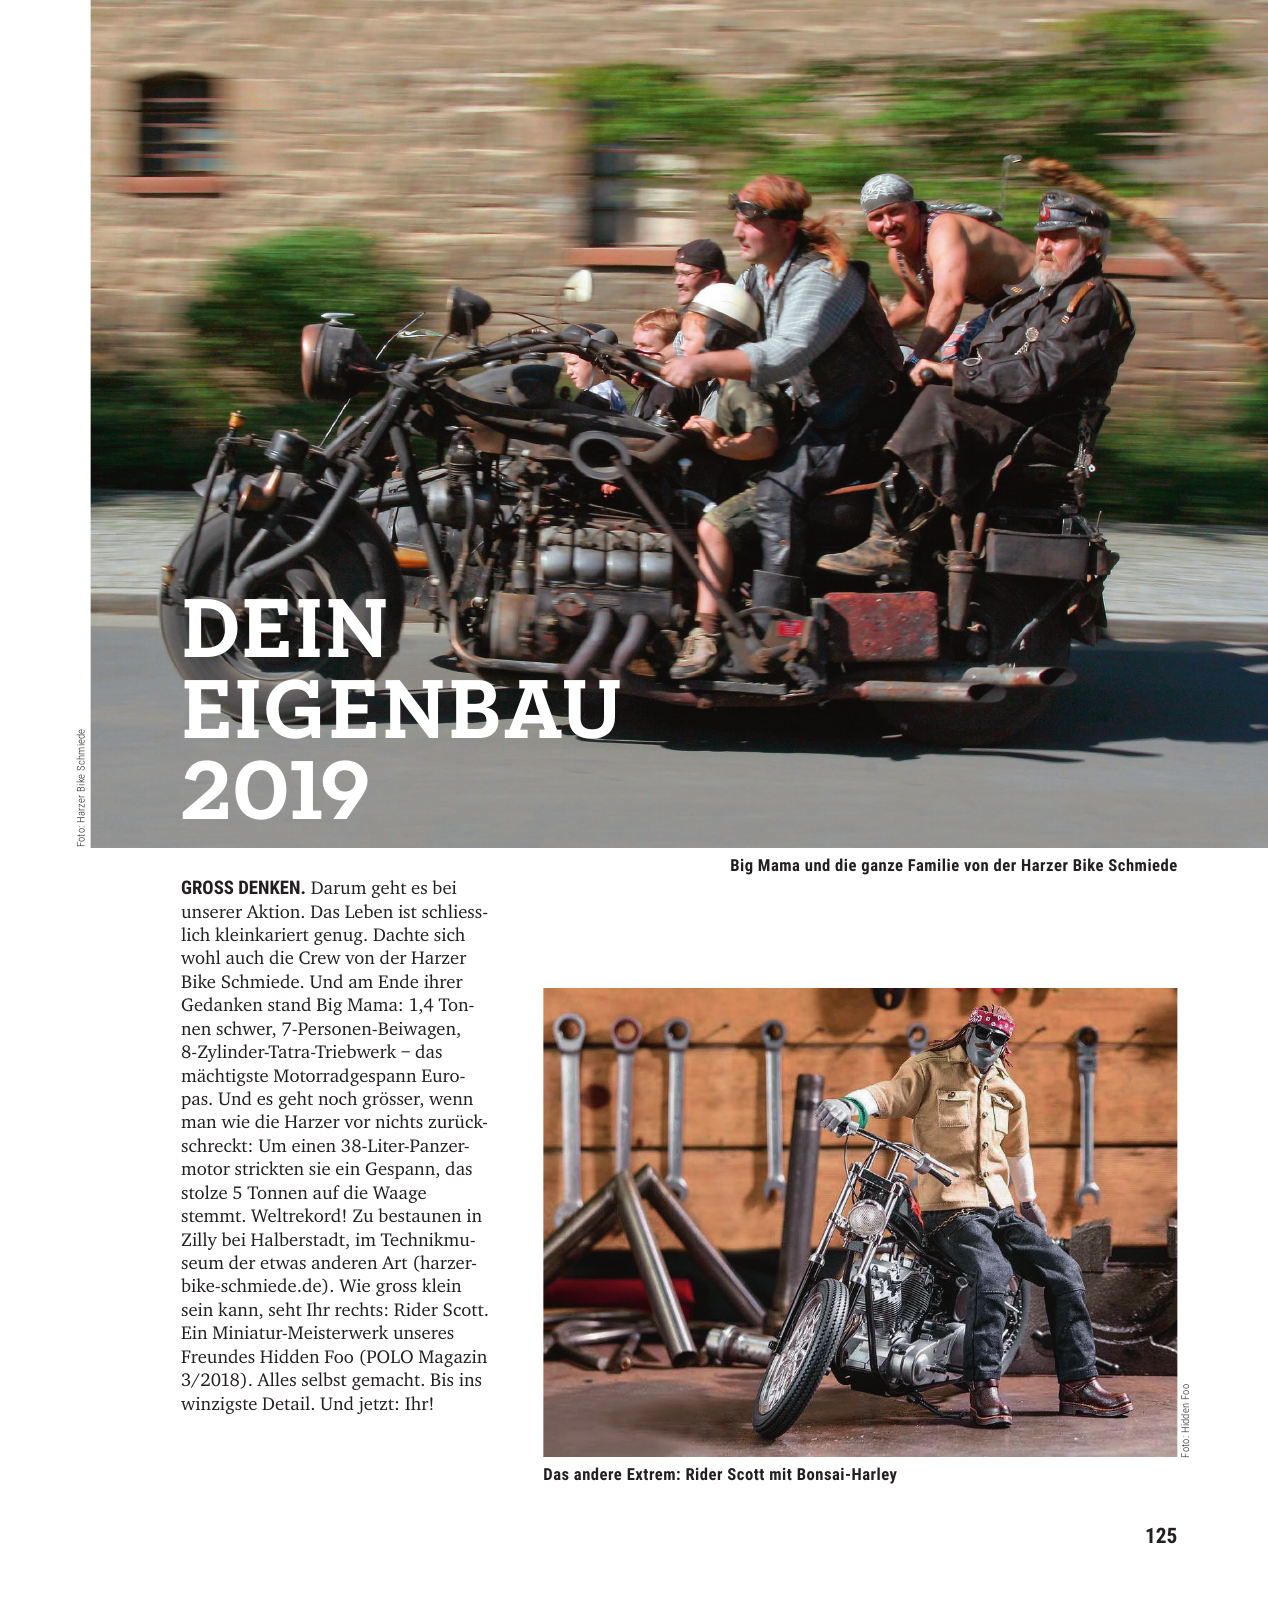 Vorschau polo-motorrad-mach-dein-ding-ch-de-Q6N3ypgVk4 Seite 125